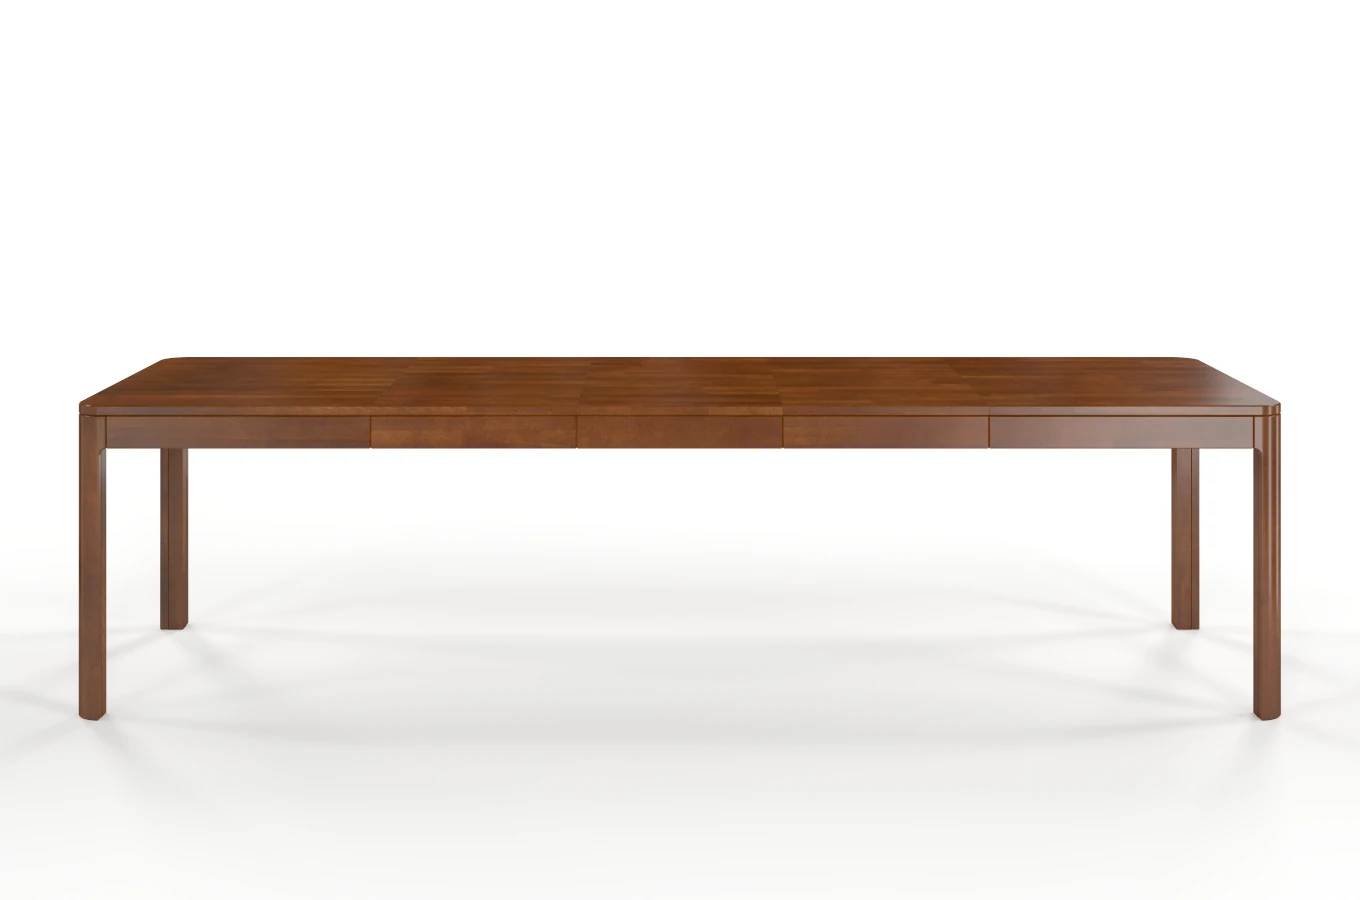 Stół drewniany bukowy rozkładany Skandica RUBY 140-260 cm